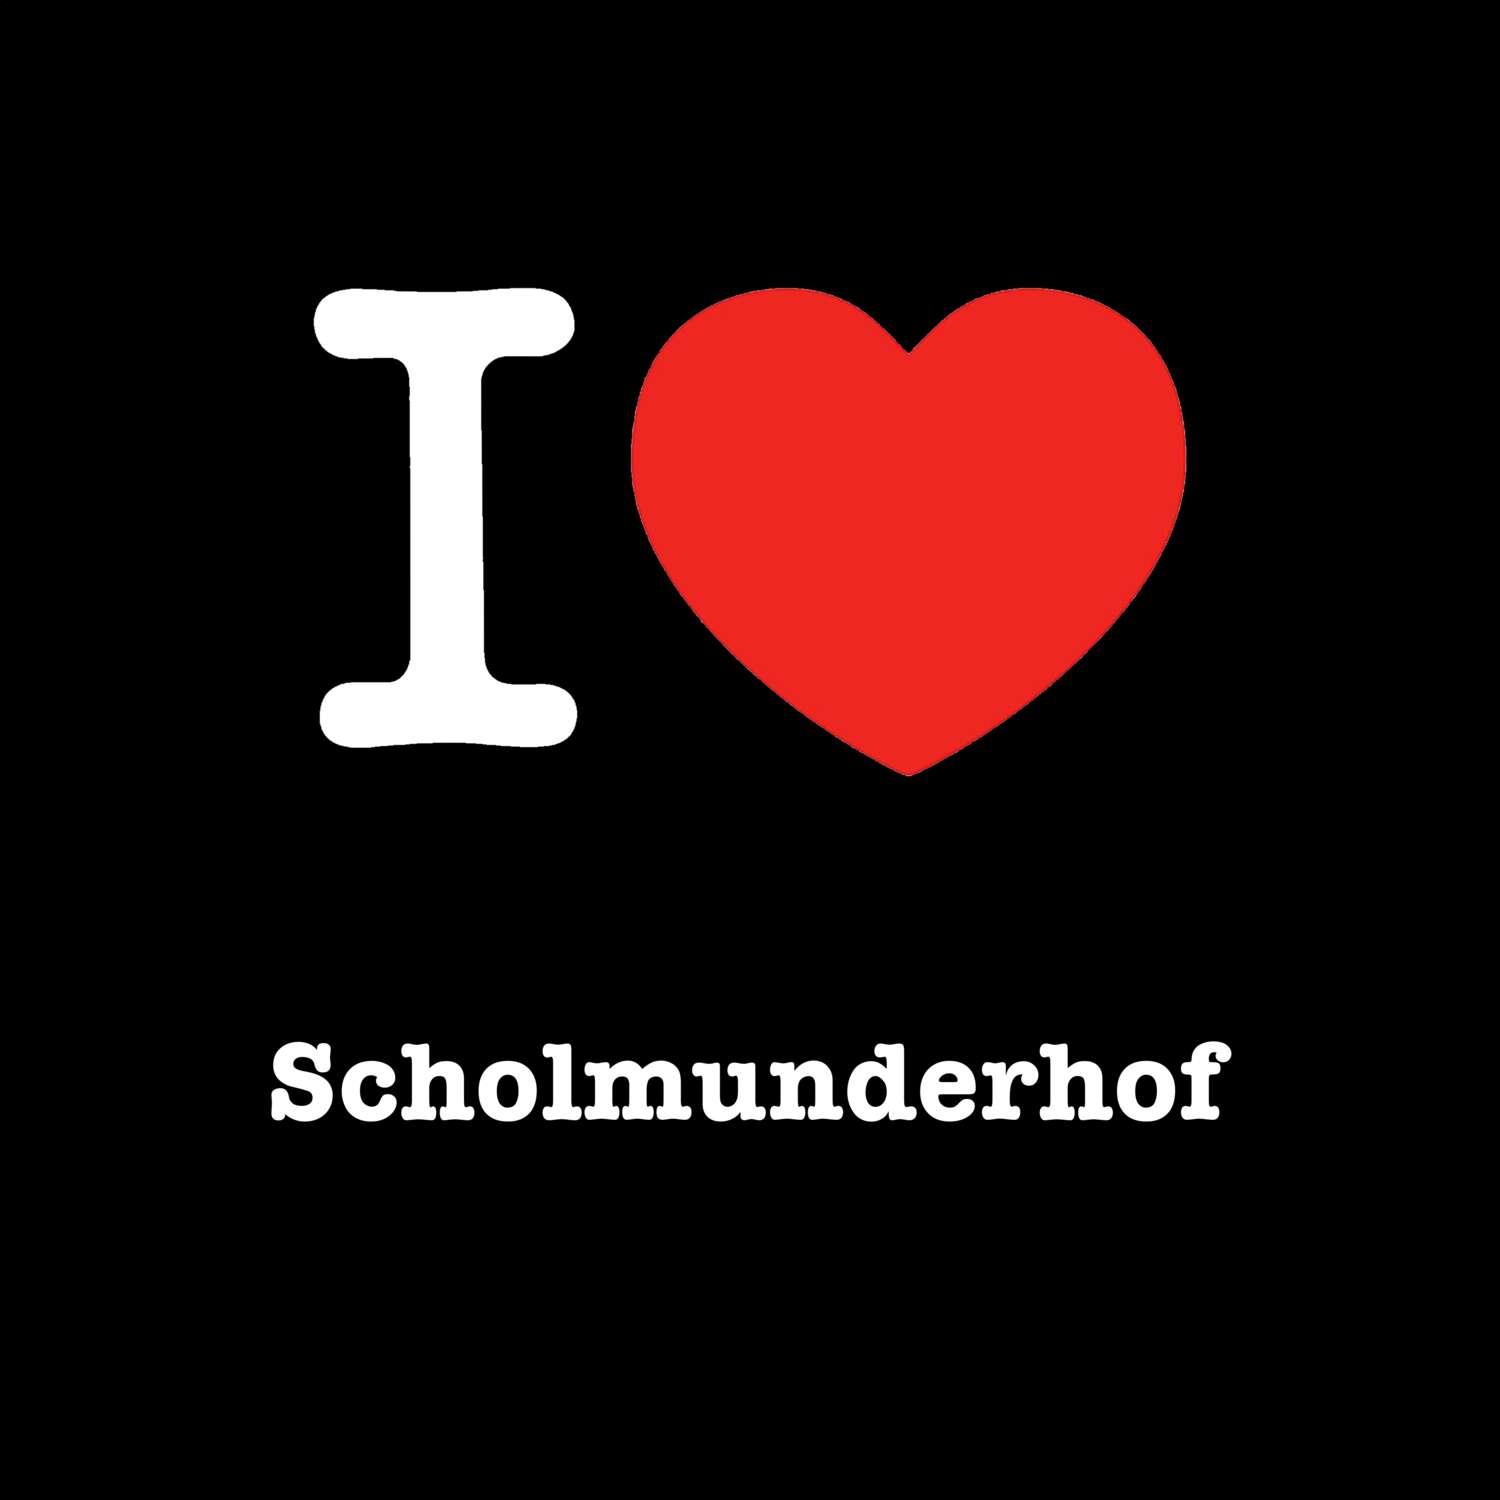 Scholmunderhof T-Shirt »I love«